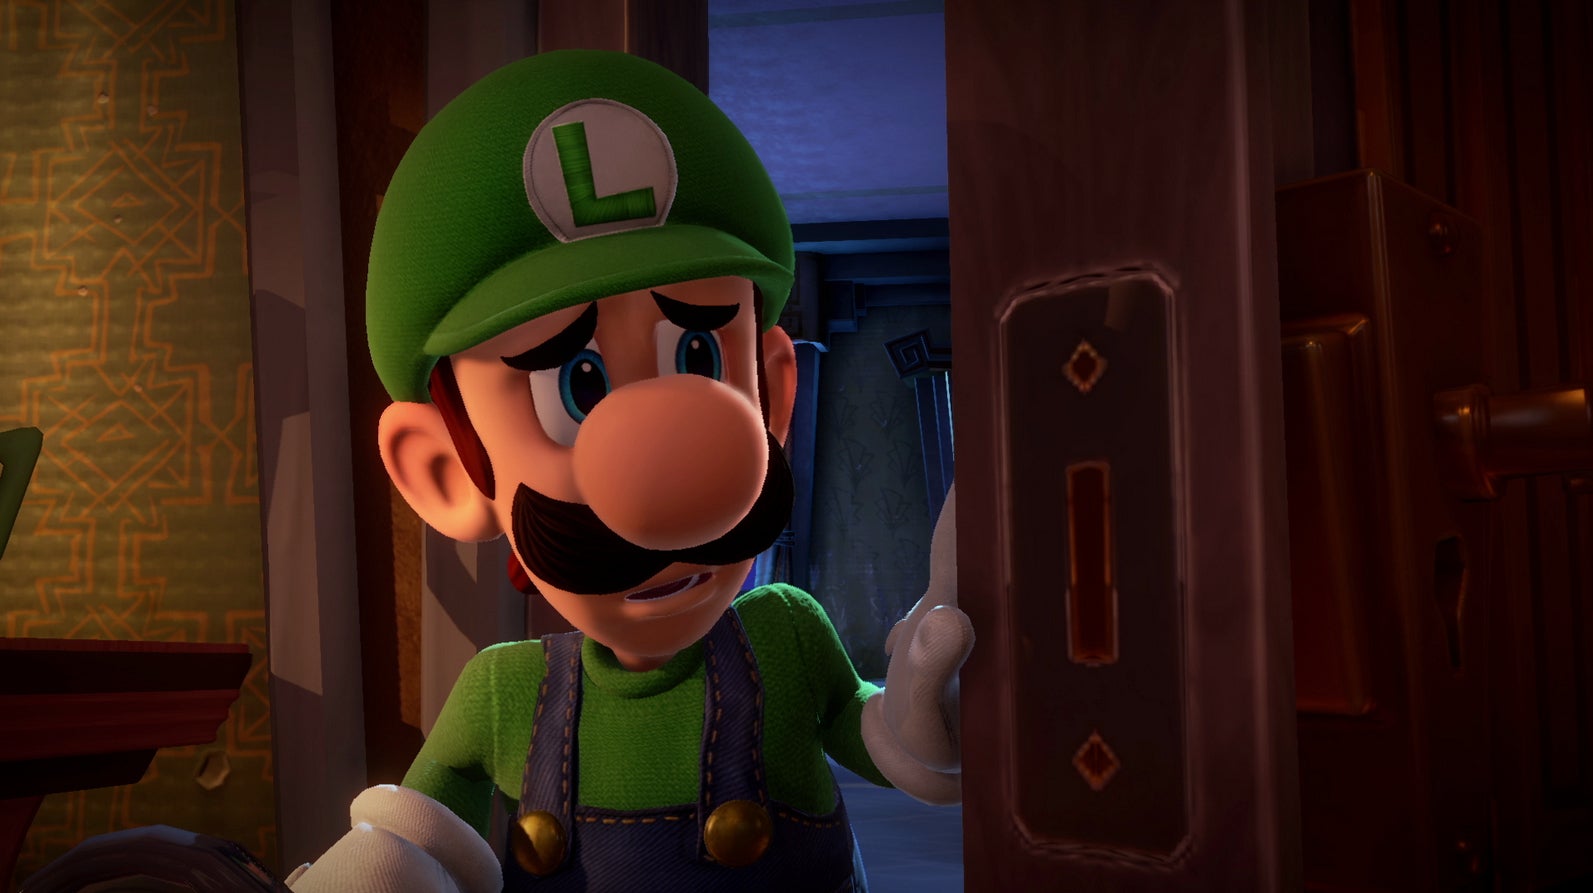 Immagine di Next Level Games, team dietro Luigi's Mansion perde il presidente Douglas Tronsgard che va in pensione